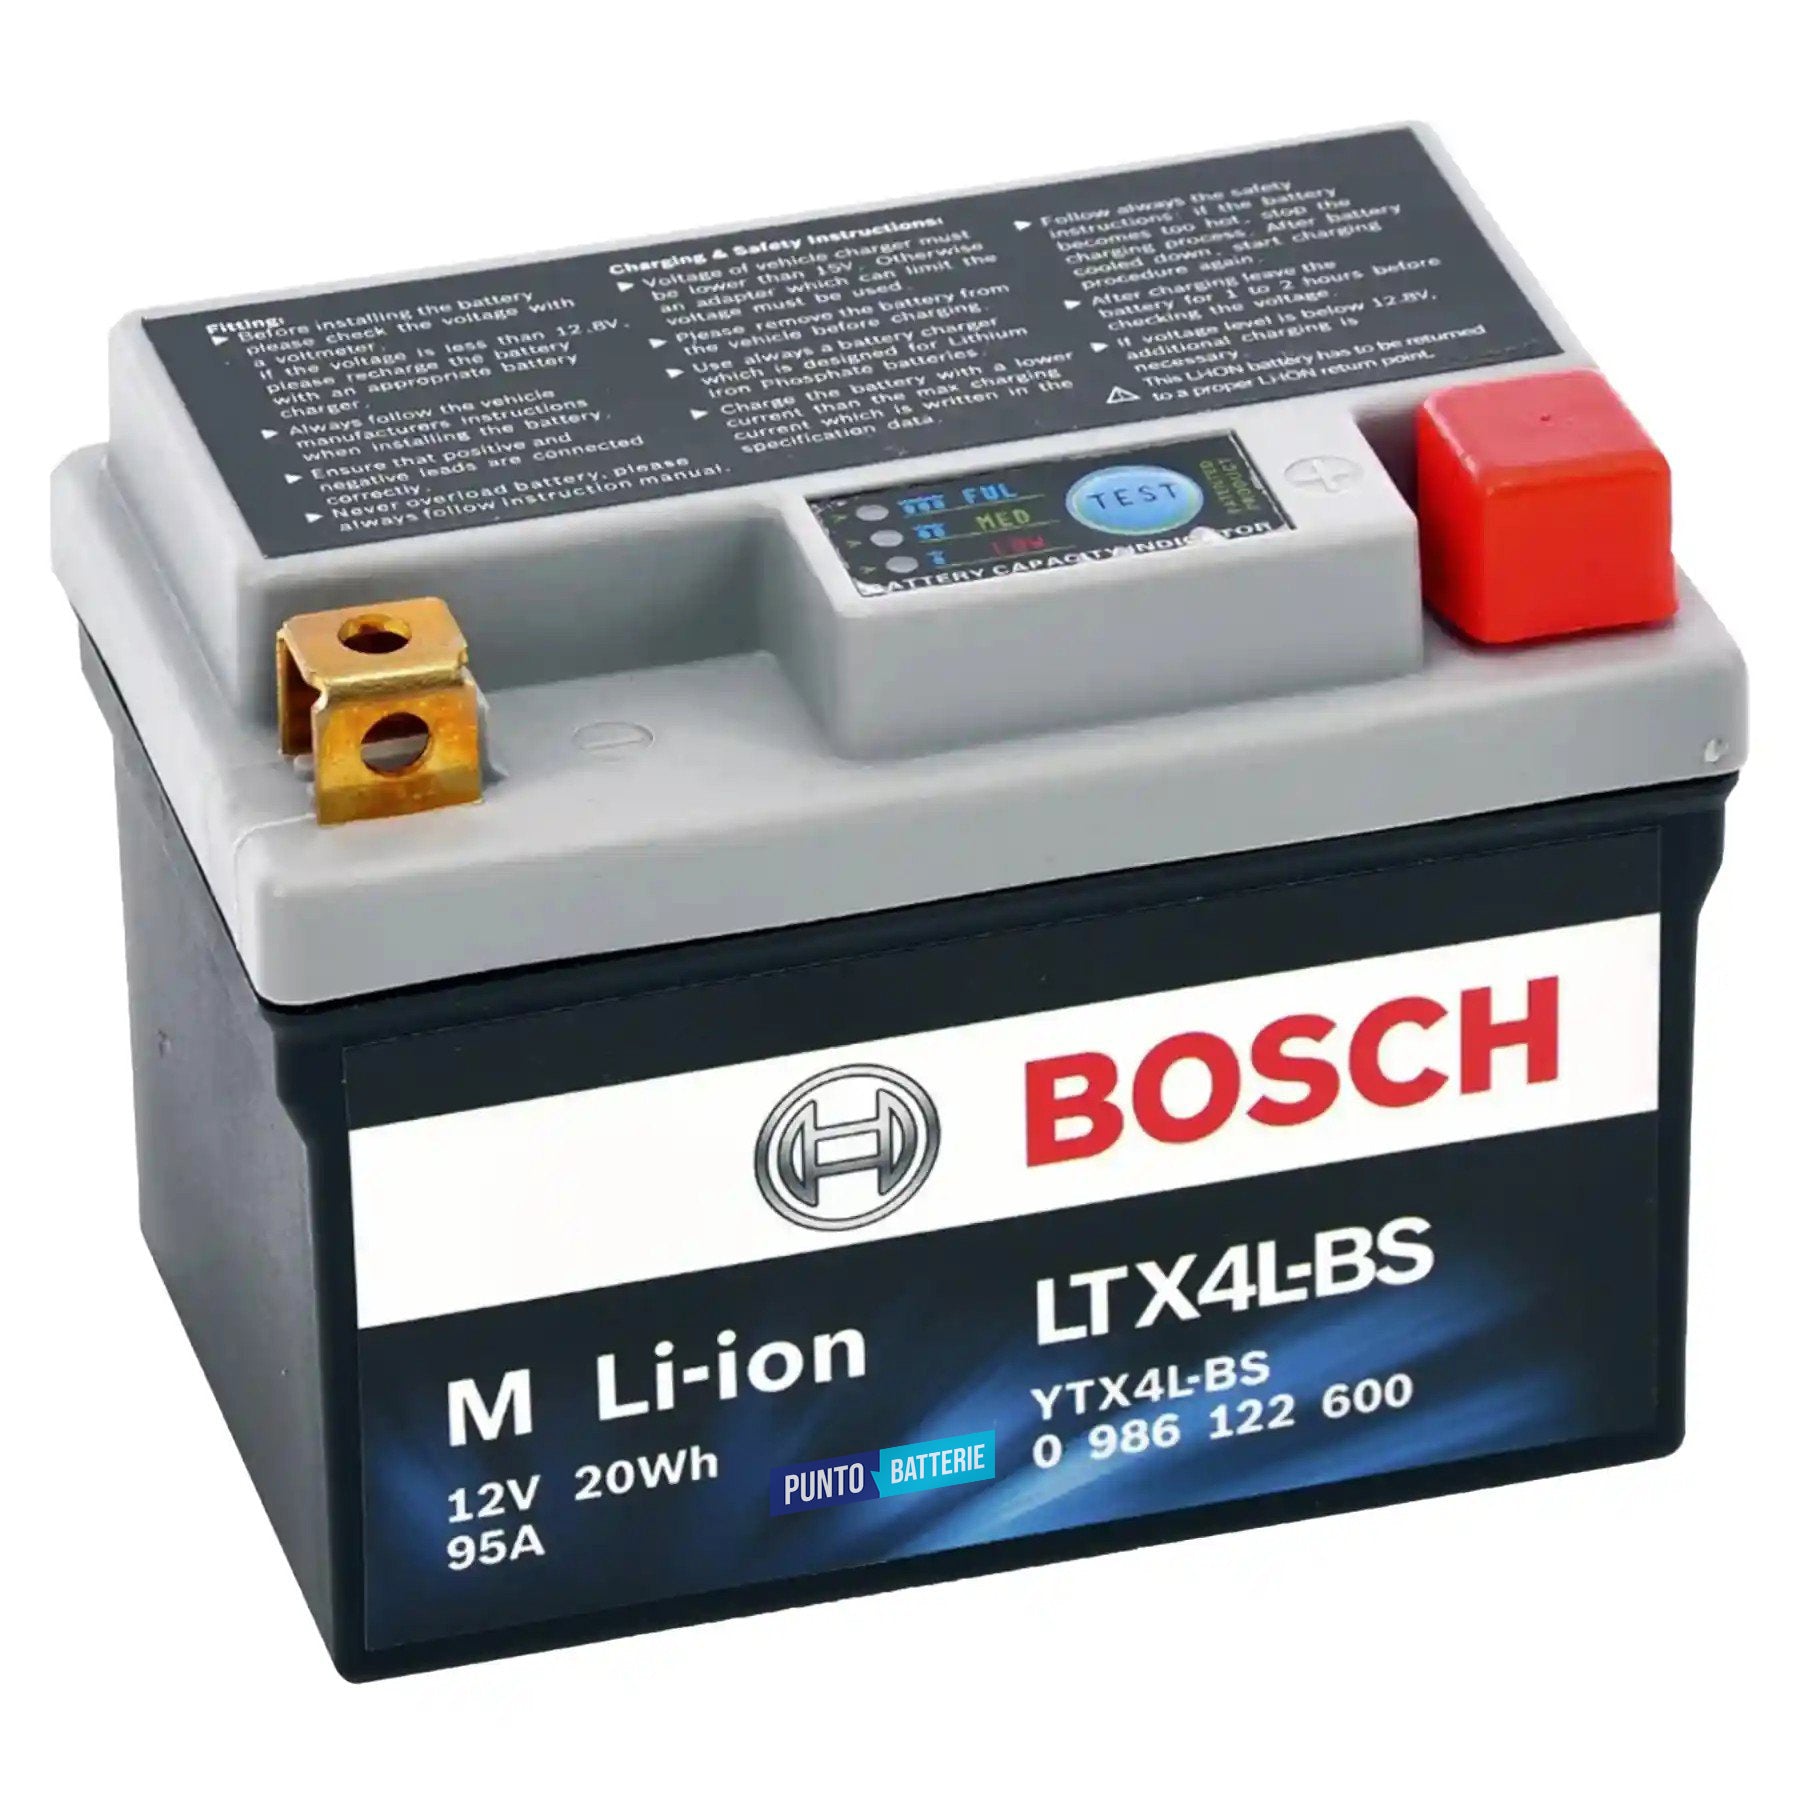 Batteria originale Bosch M Li-ion LTX4L-BS, dimensioni 150 x 87 x 143, polo positivo a destra, 12 volt, 1 amperora, 95 ampere. Batteria per moto, scooter e powersport.